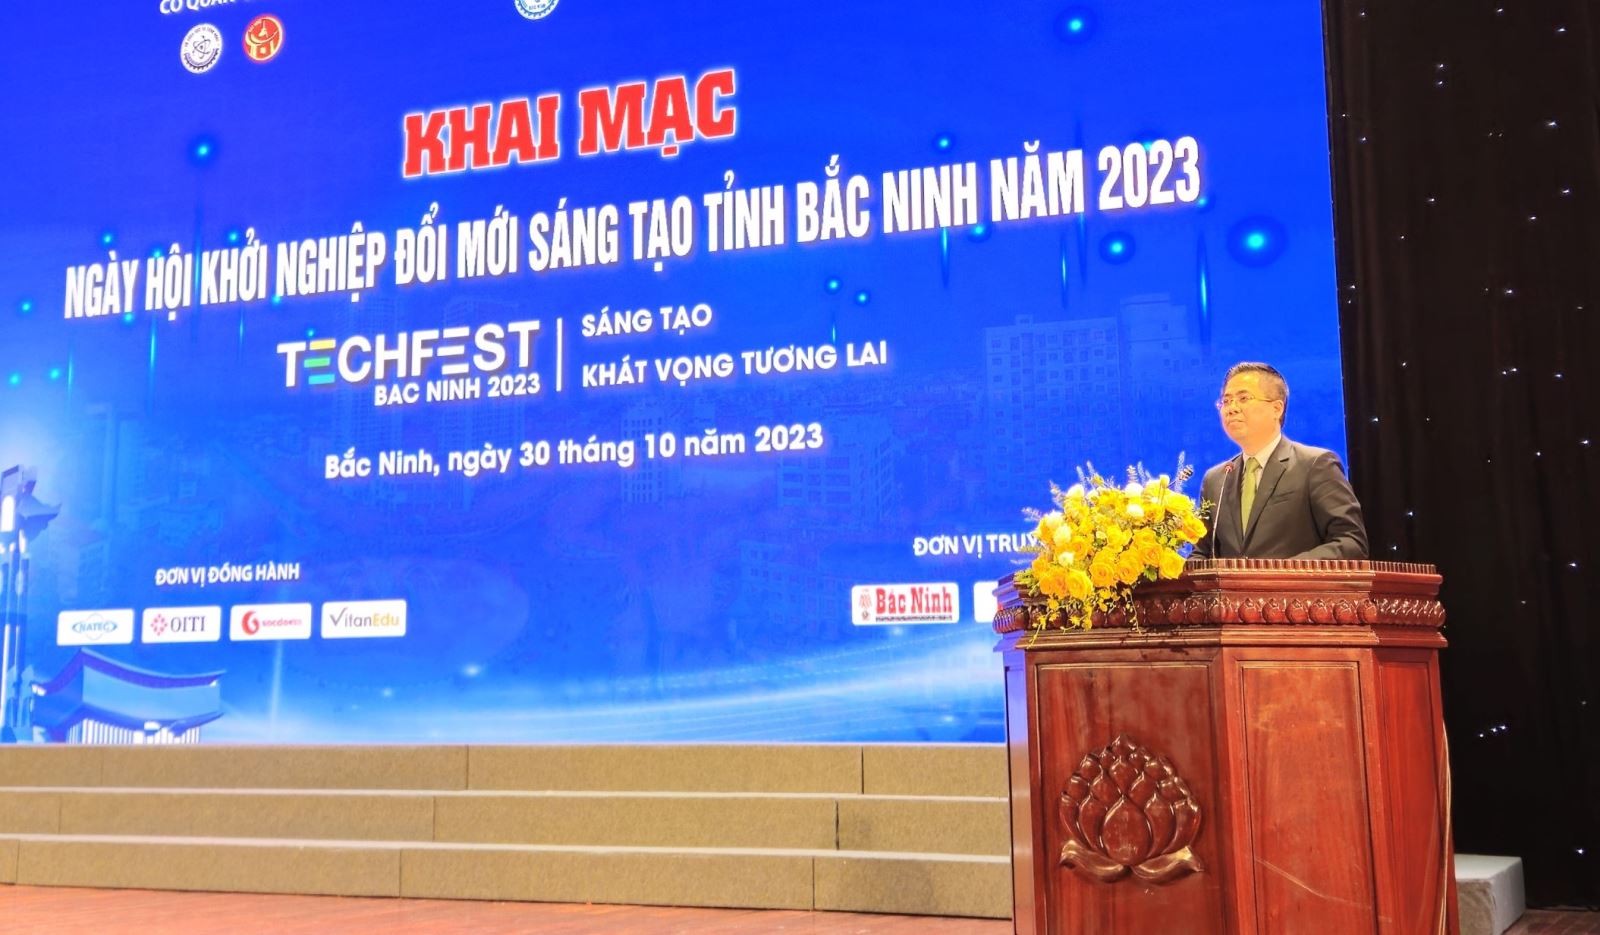 Khởi nghiệp đổi mới sáng tạo tỉnh Bắc Ninh 2023: Thứ trưởng Nguyễn Hoàng Giang đặt kì vọng lớn - Ảnh 2.